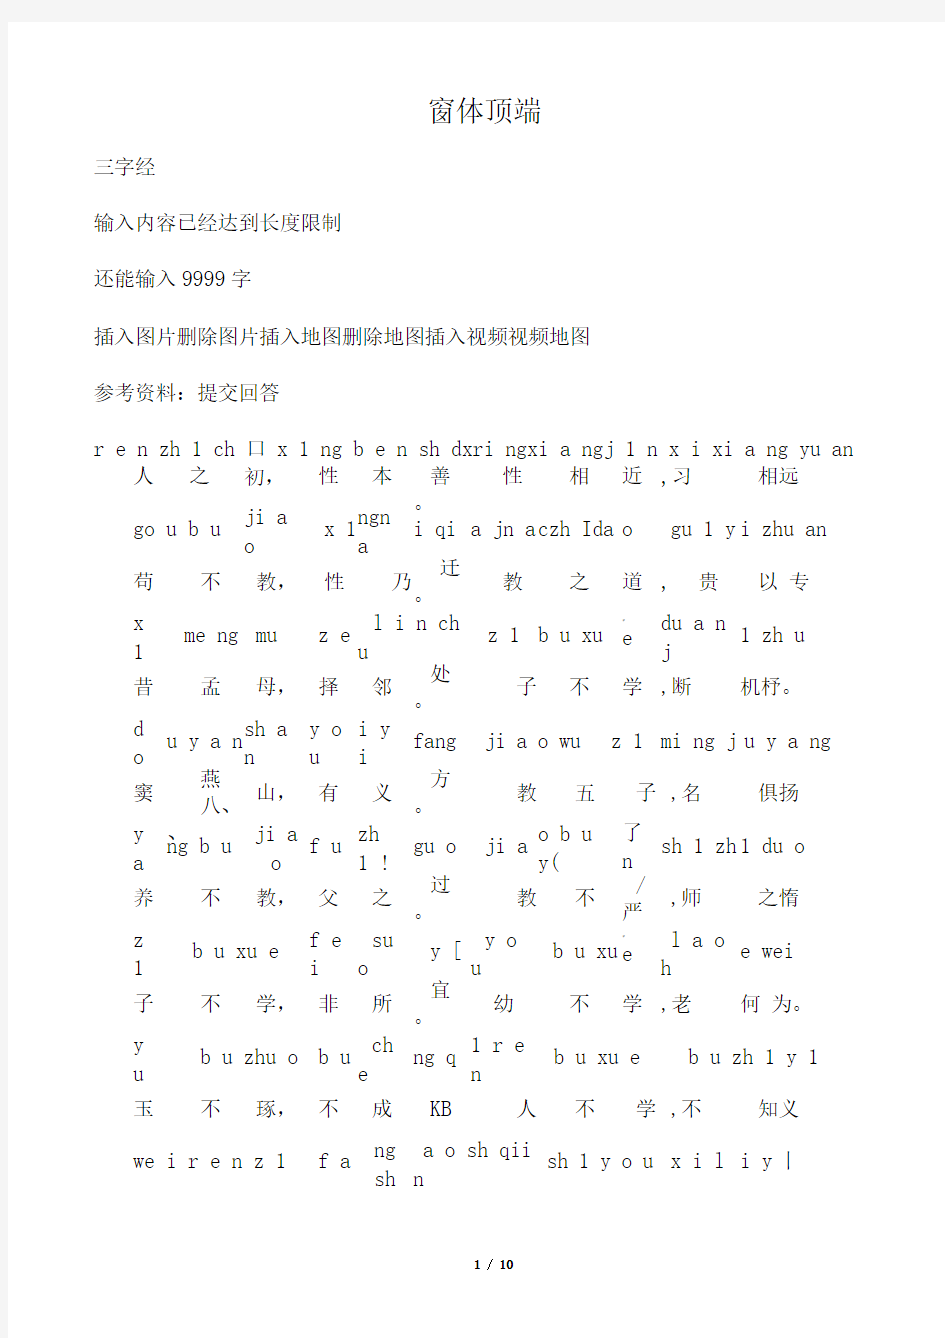 三字经全文带拼音打印版  经典